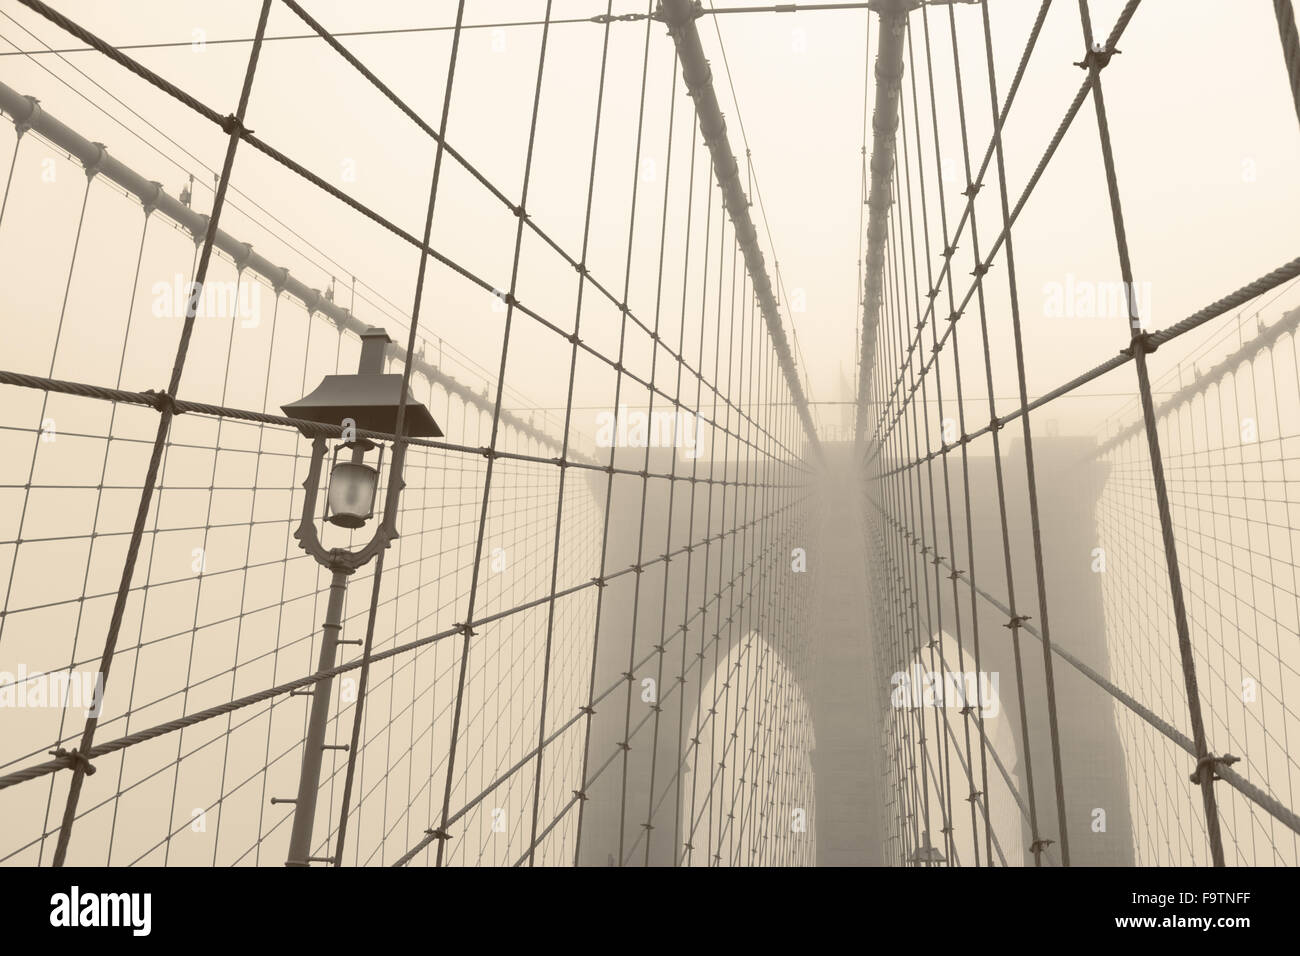 Brooklyn Bridge on a foggy day Stock Photo